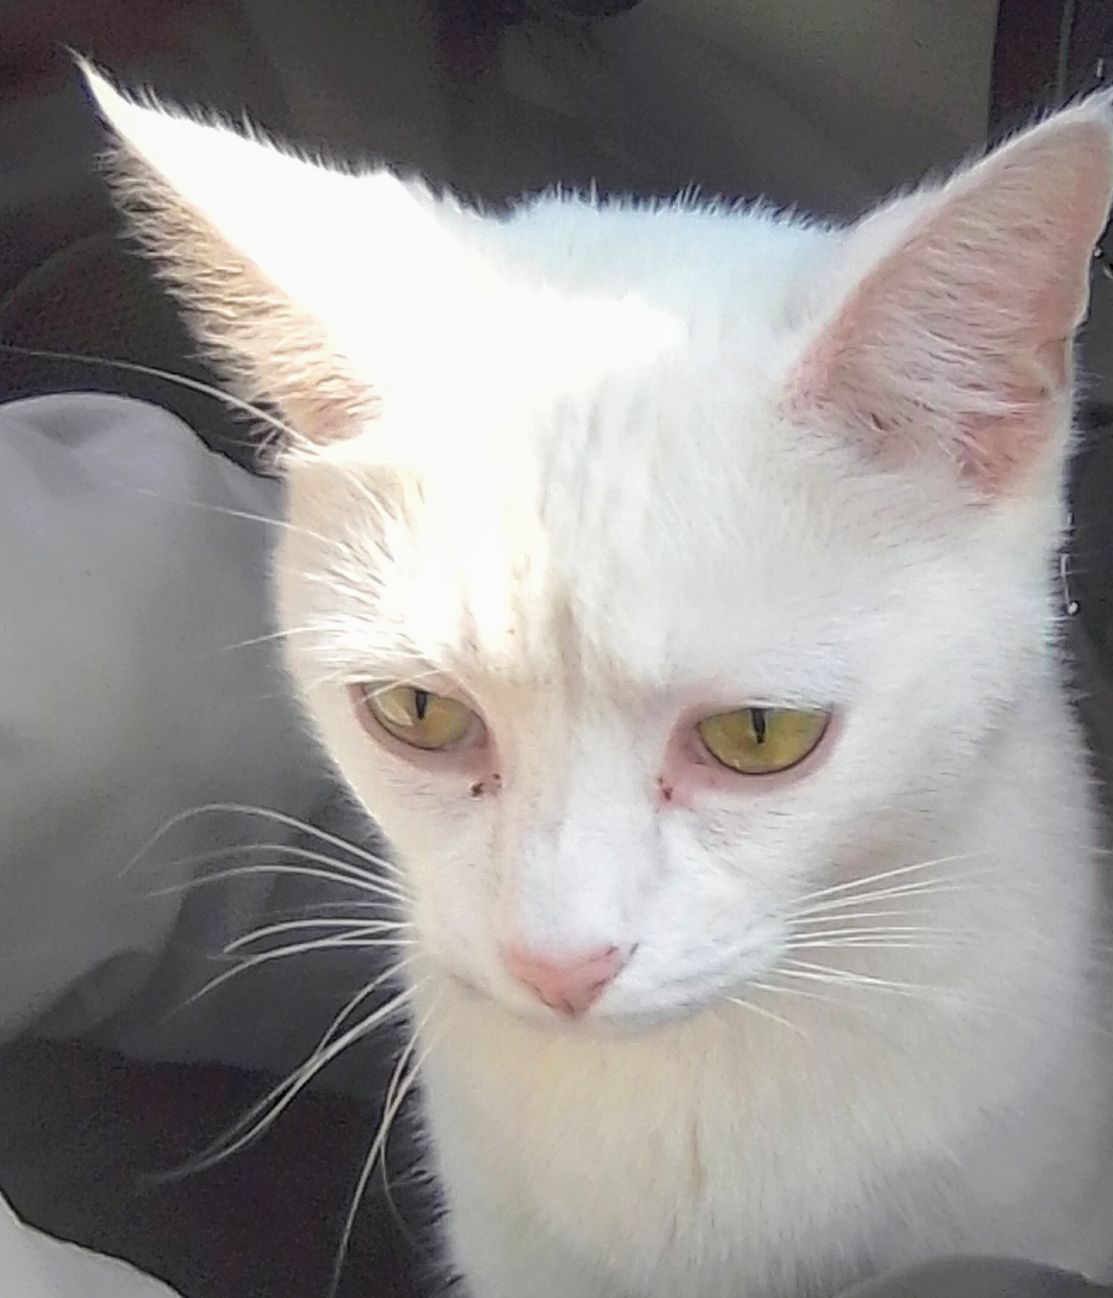 a picture of Falkor, kitten kat, danger a cat that needs a foster home.